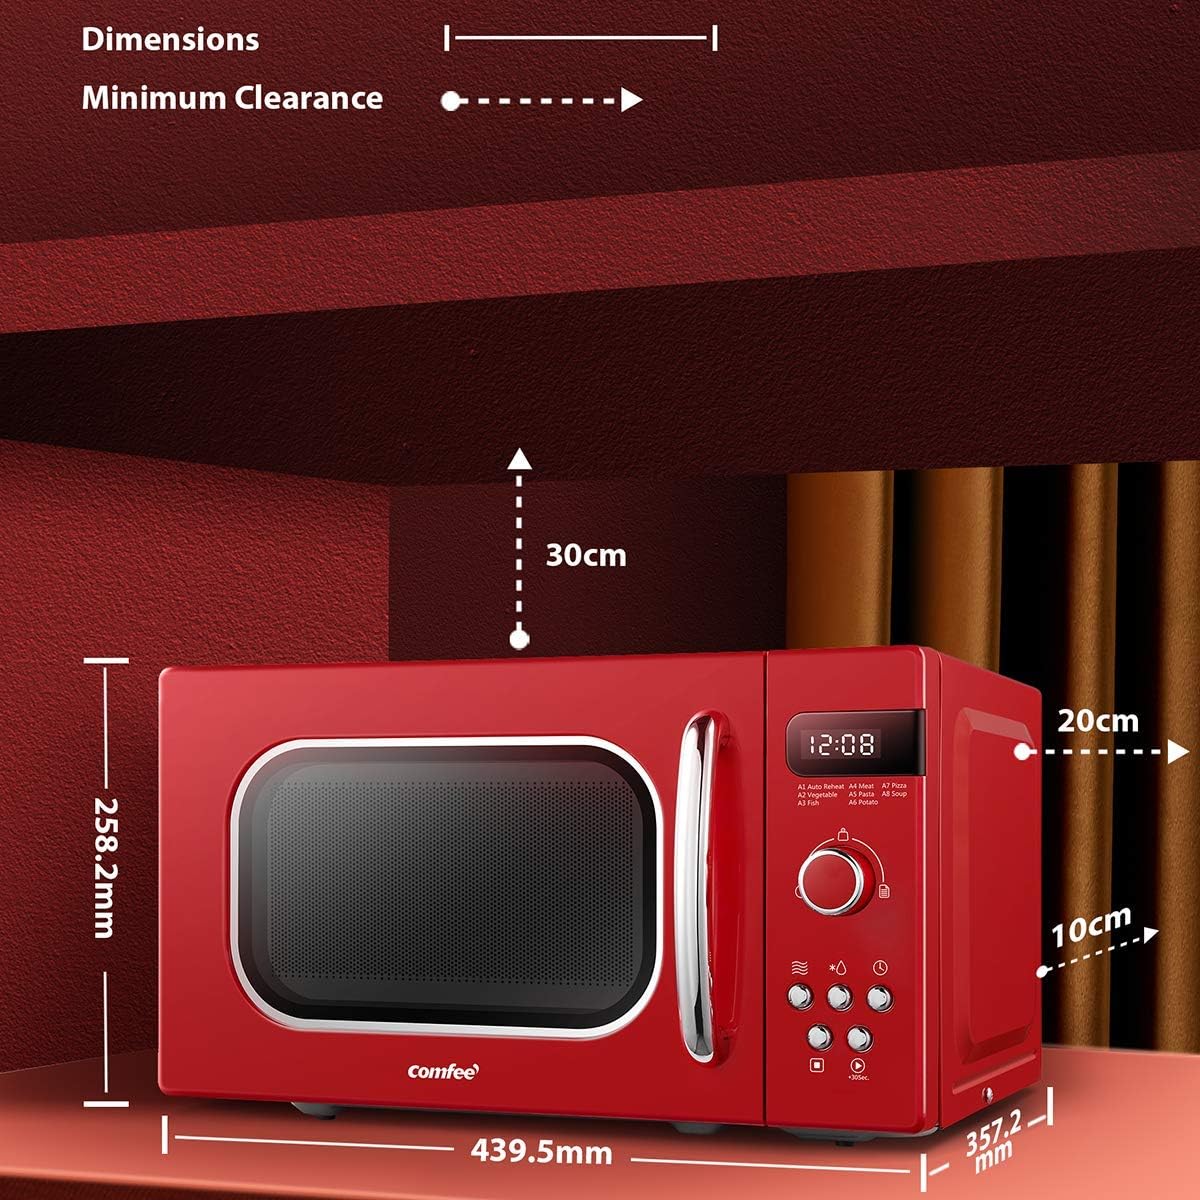 COMFEE' Retro Style 800w 20L Microwave Oven